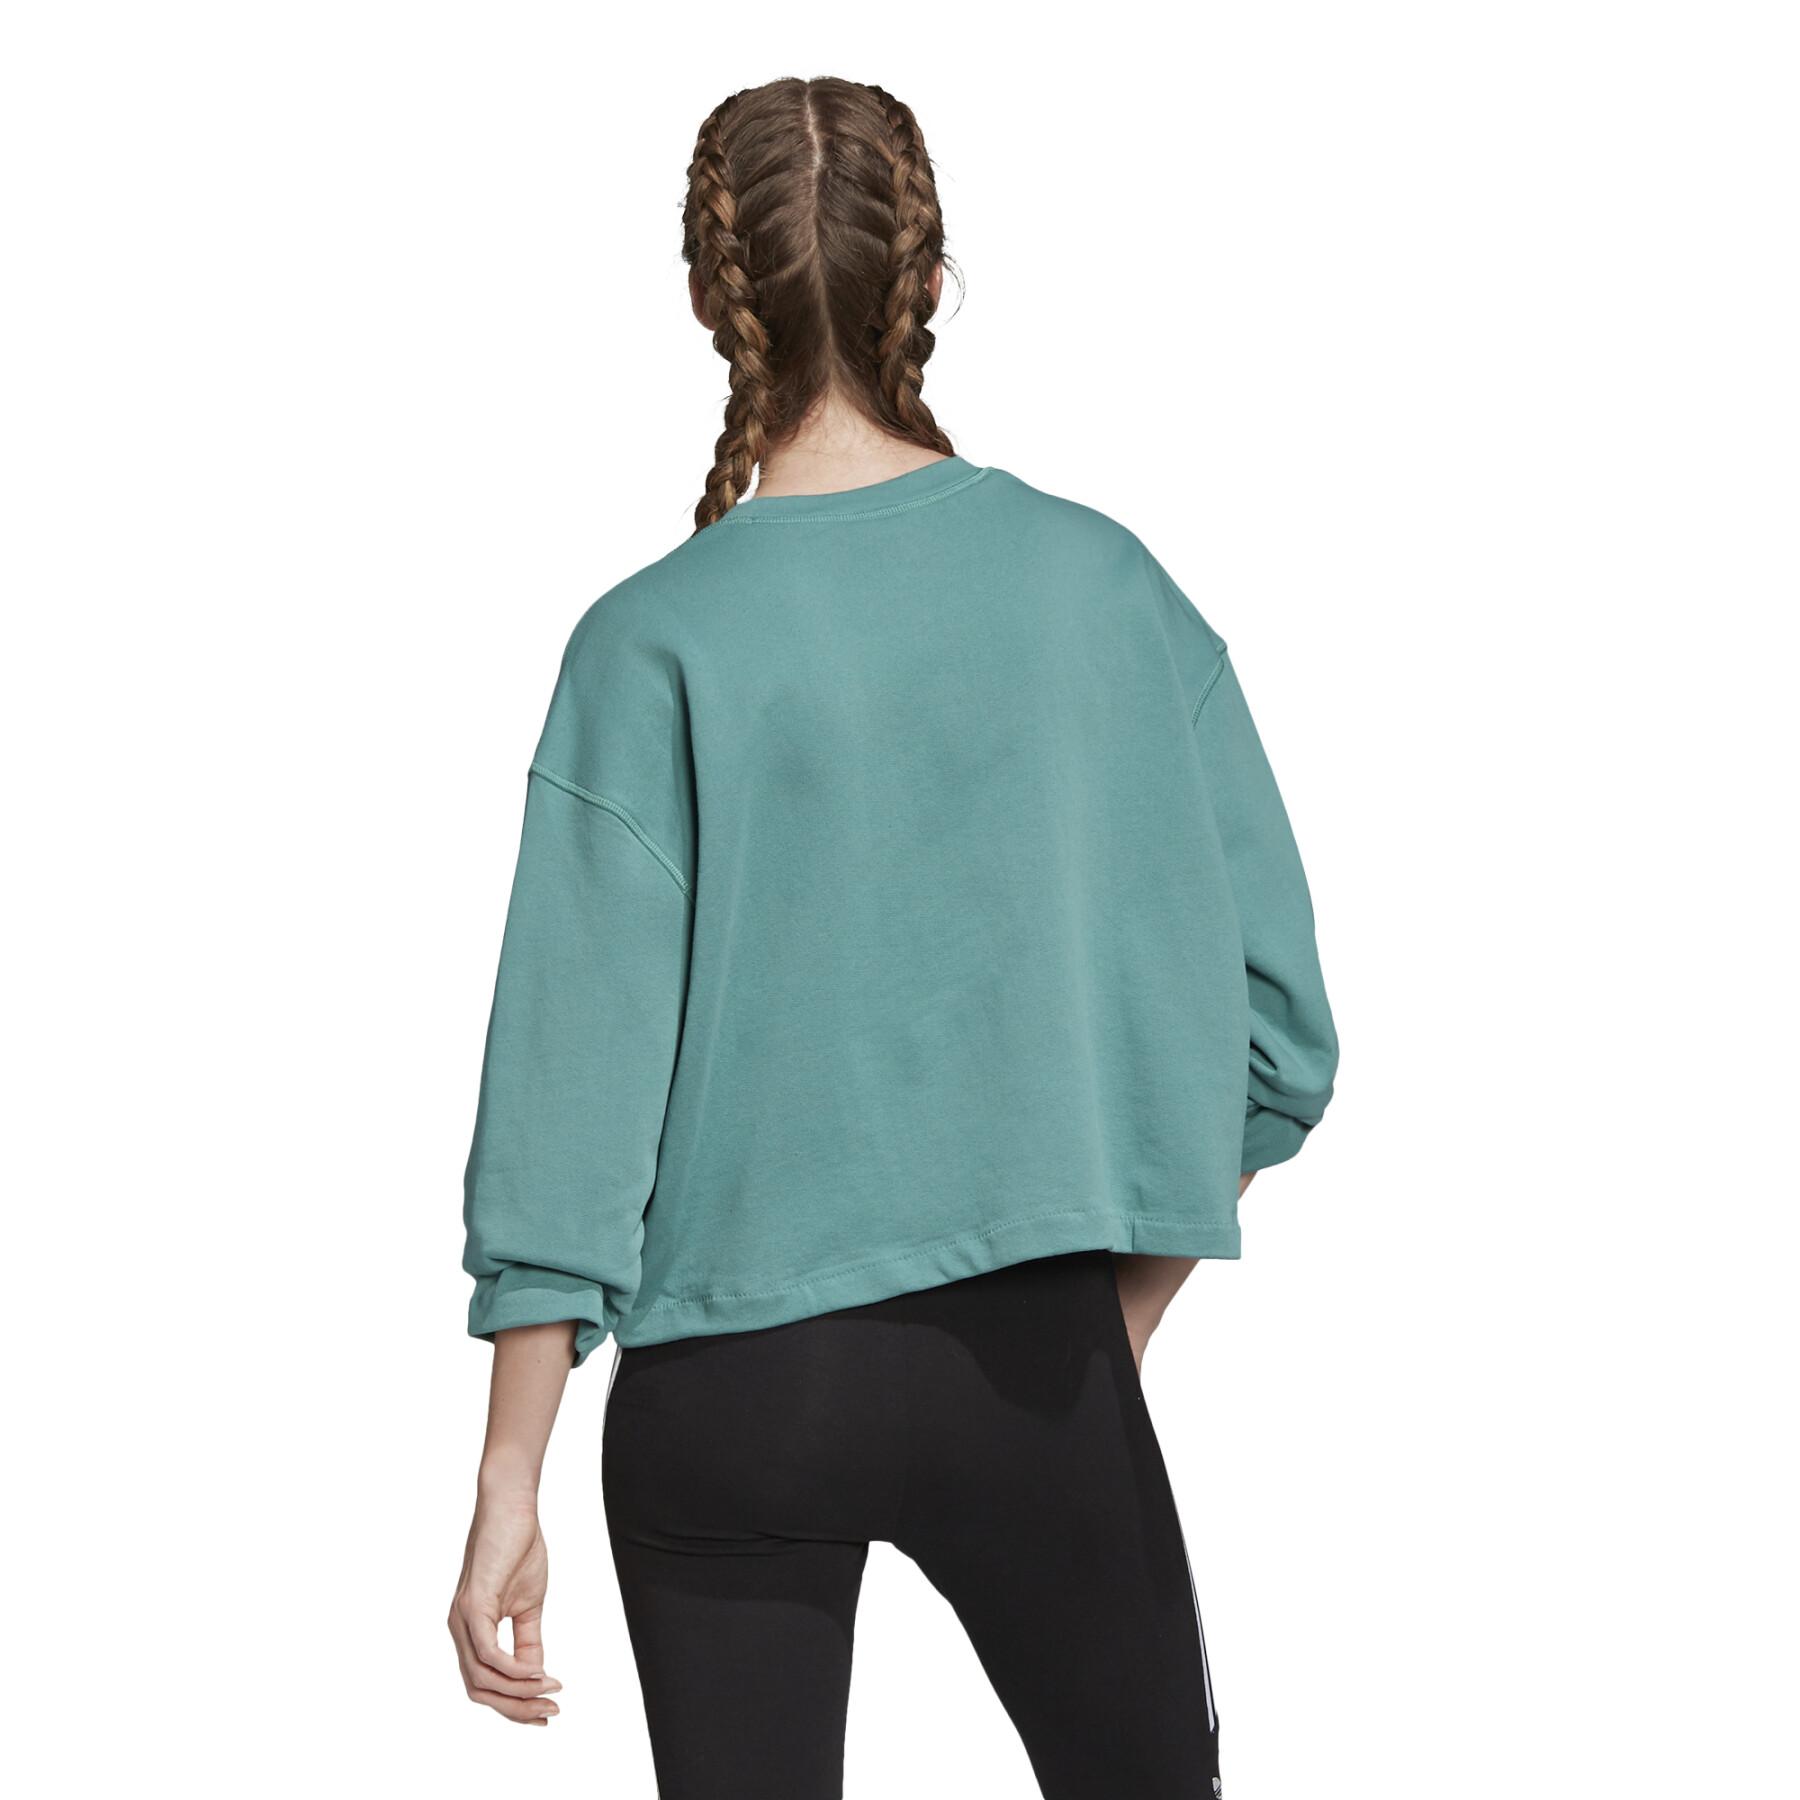 Damen-Sweatshirt adidas originals Premium Crew